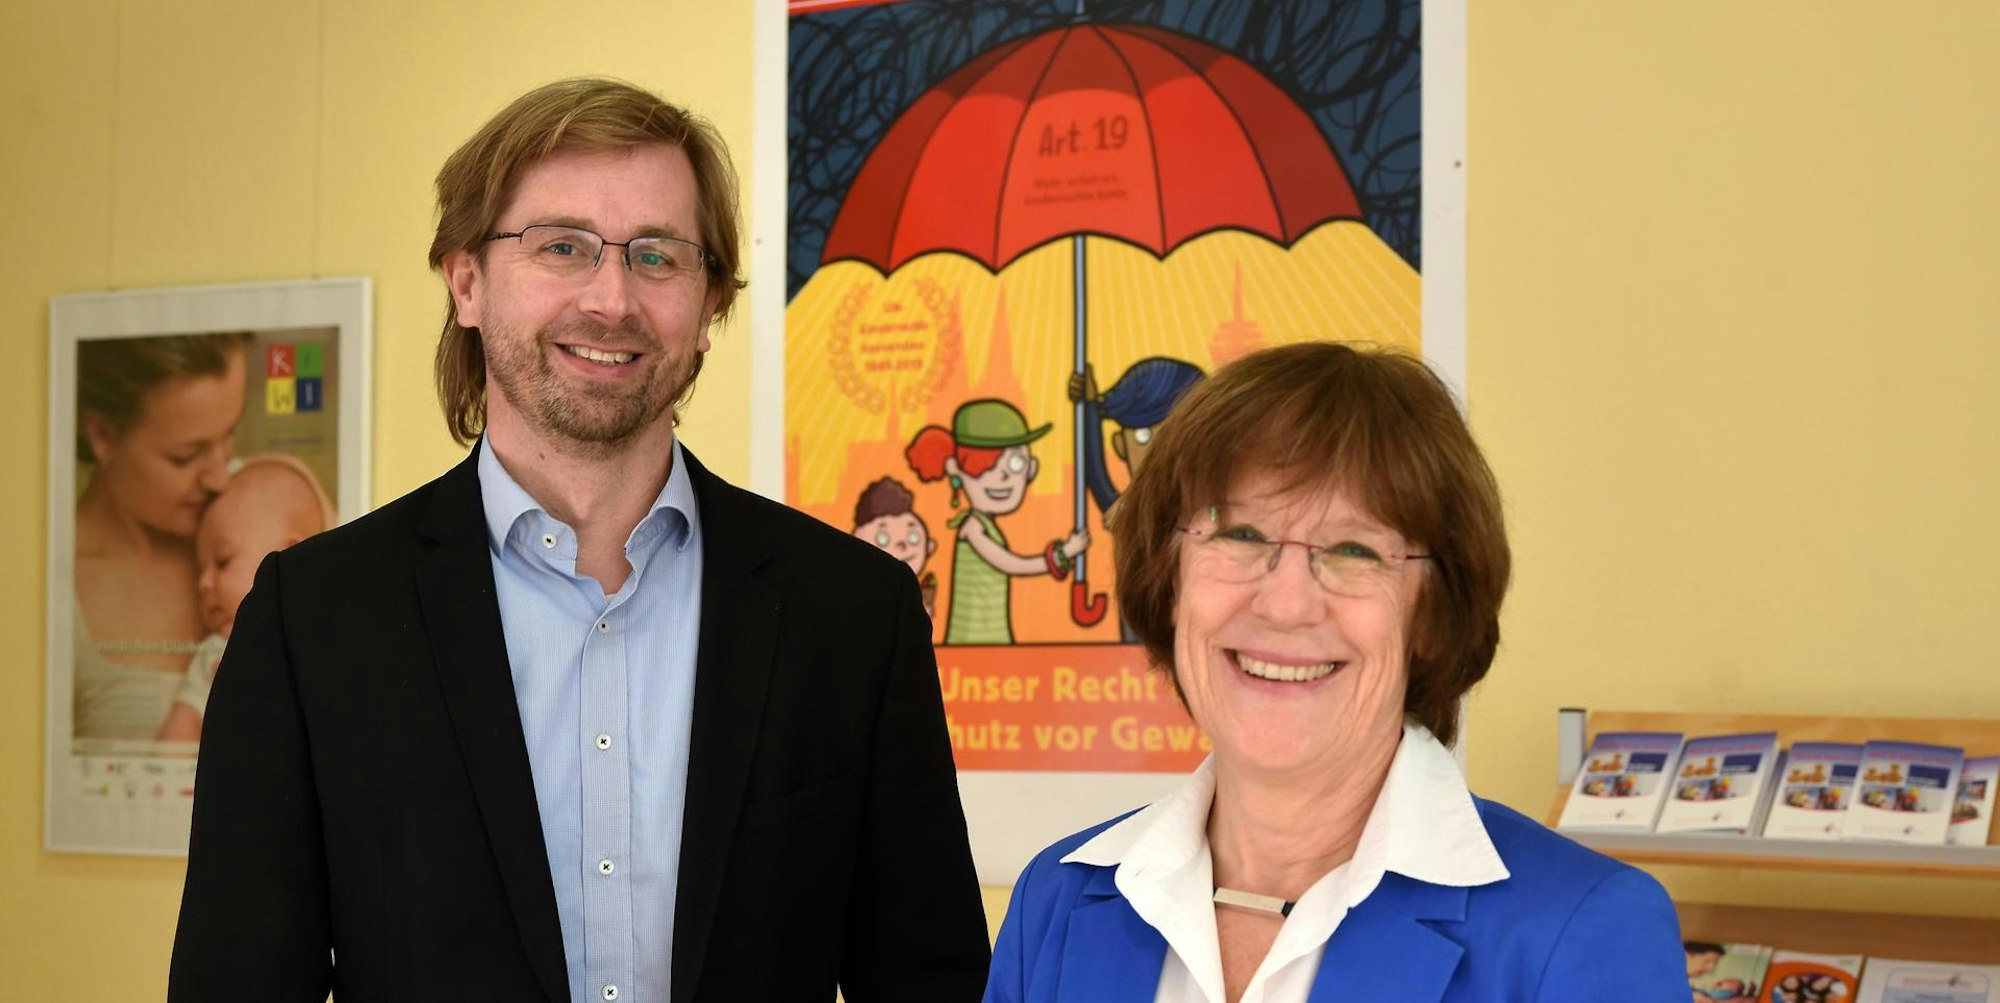 Lars Hüttler (l.) hat am 1. Januar die Kinderschutzbund-Geschäftsführung von Barbara Zaabe übernommen.